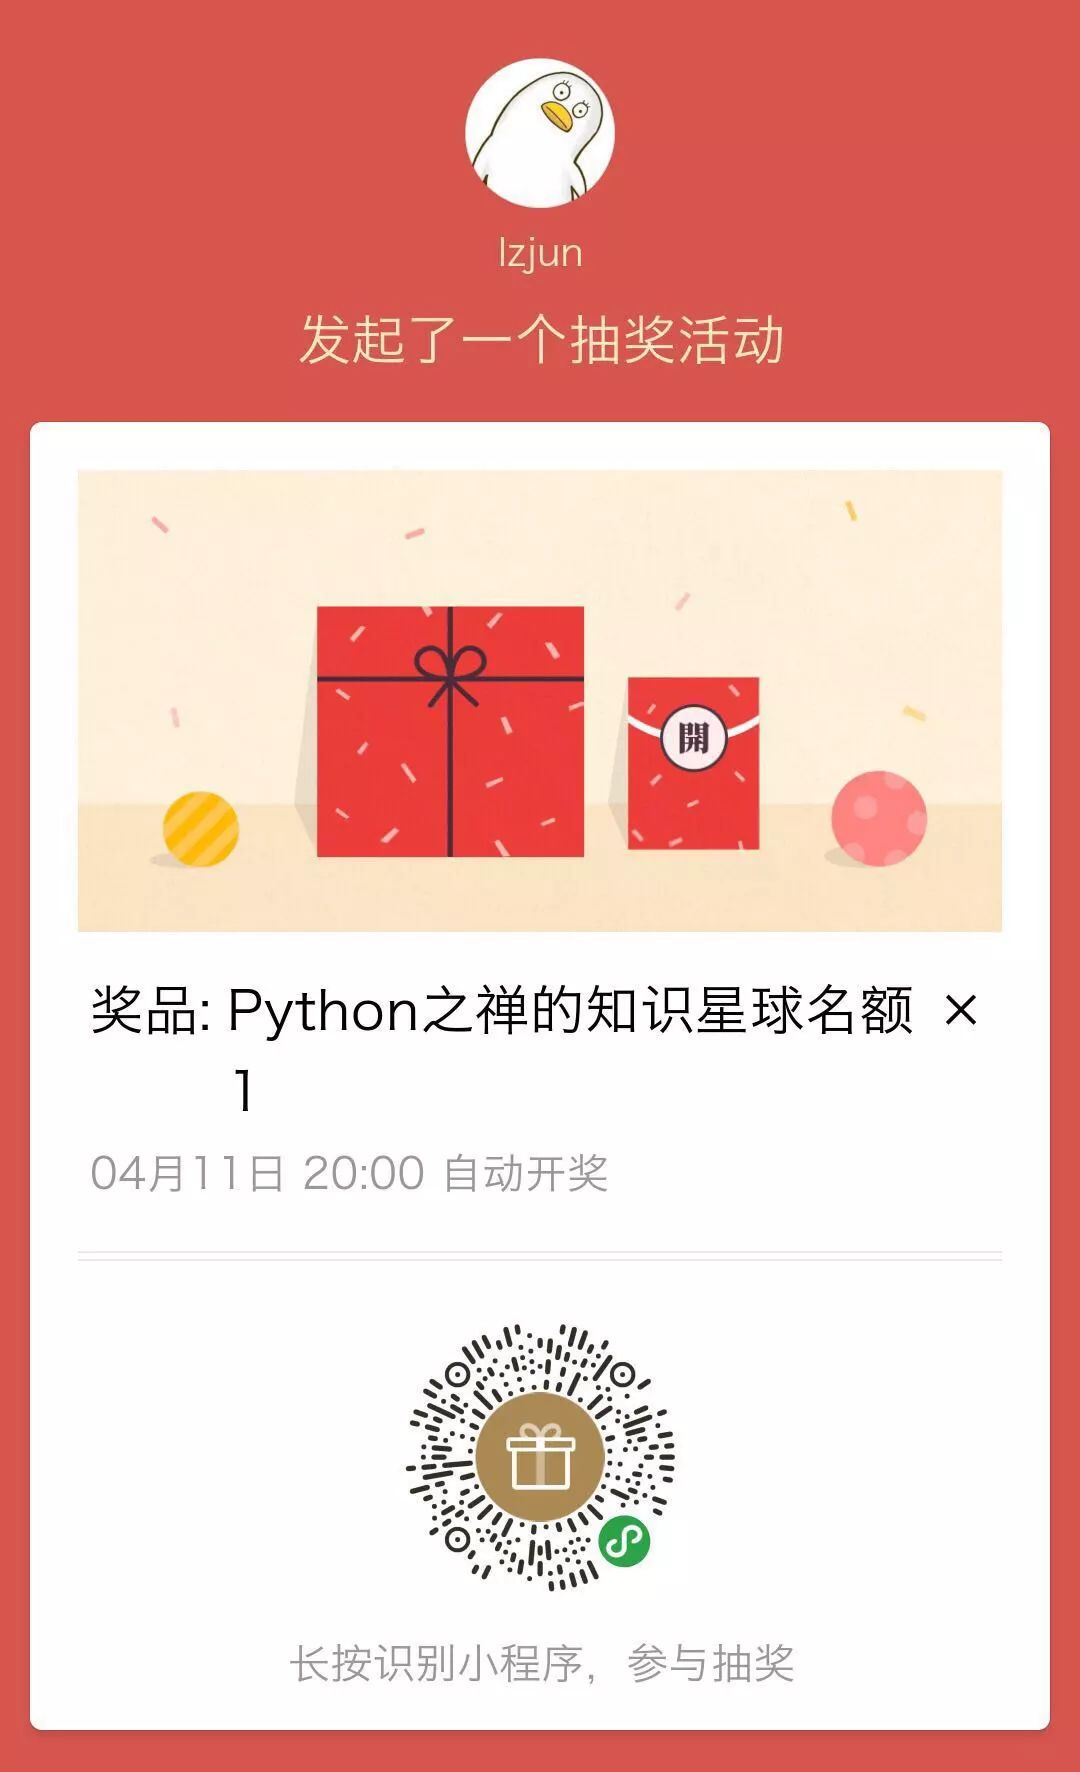 如何用python代码实现抽奖助手自动参与抽奖